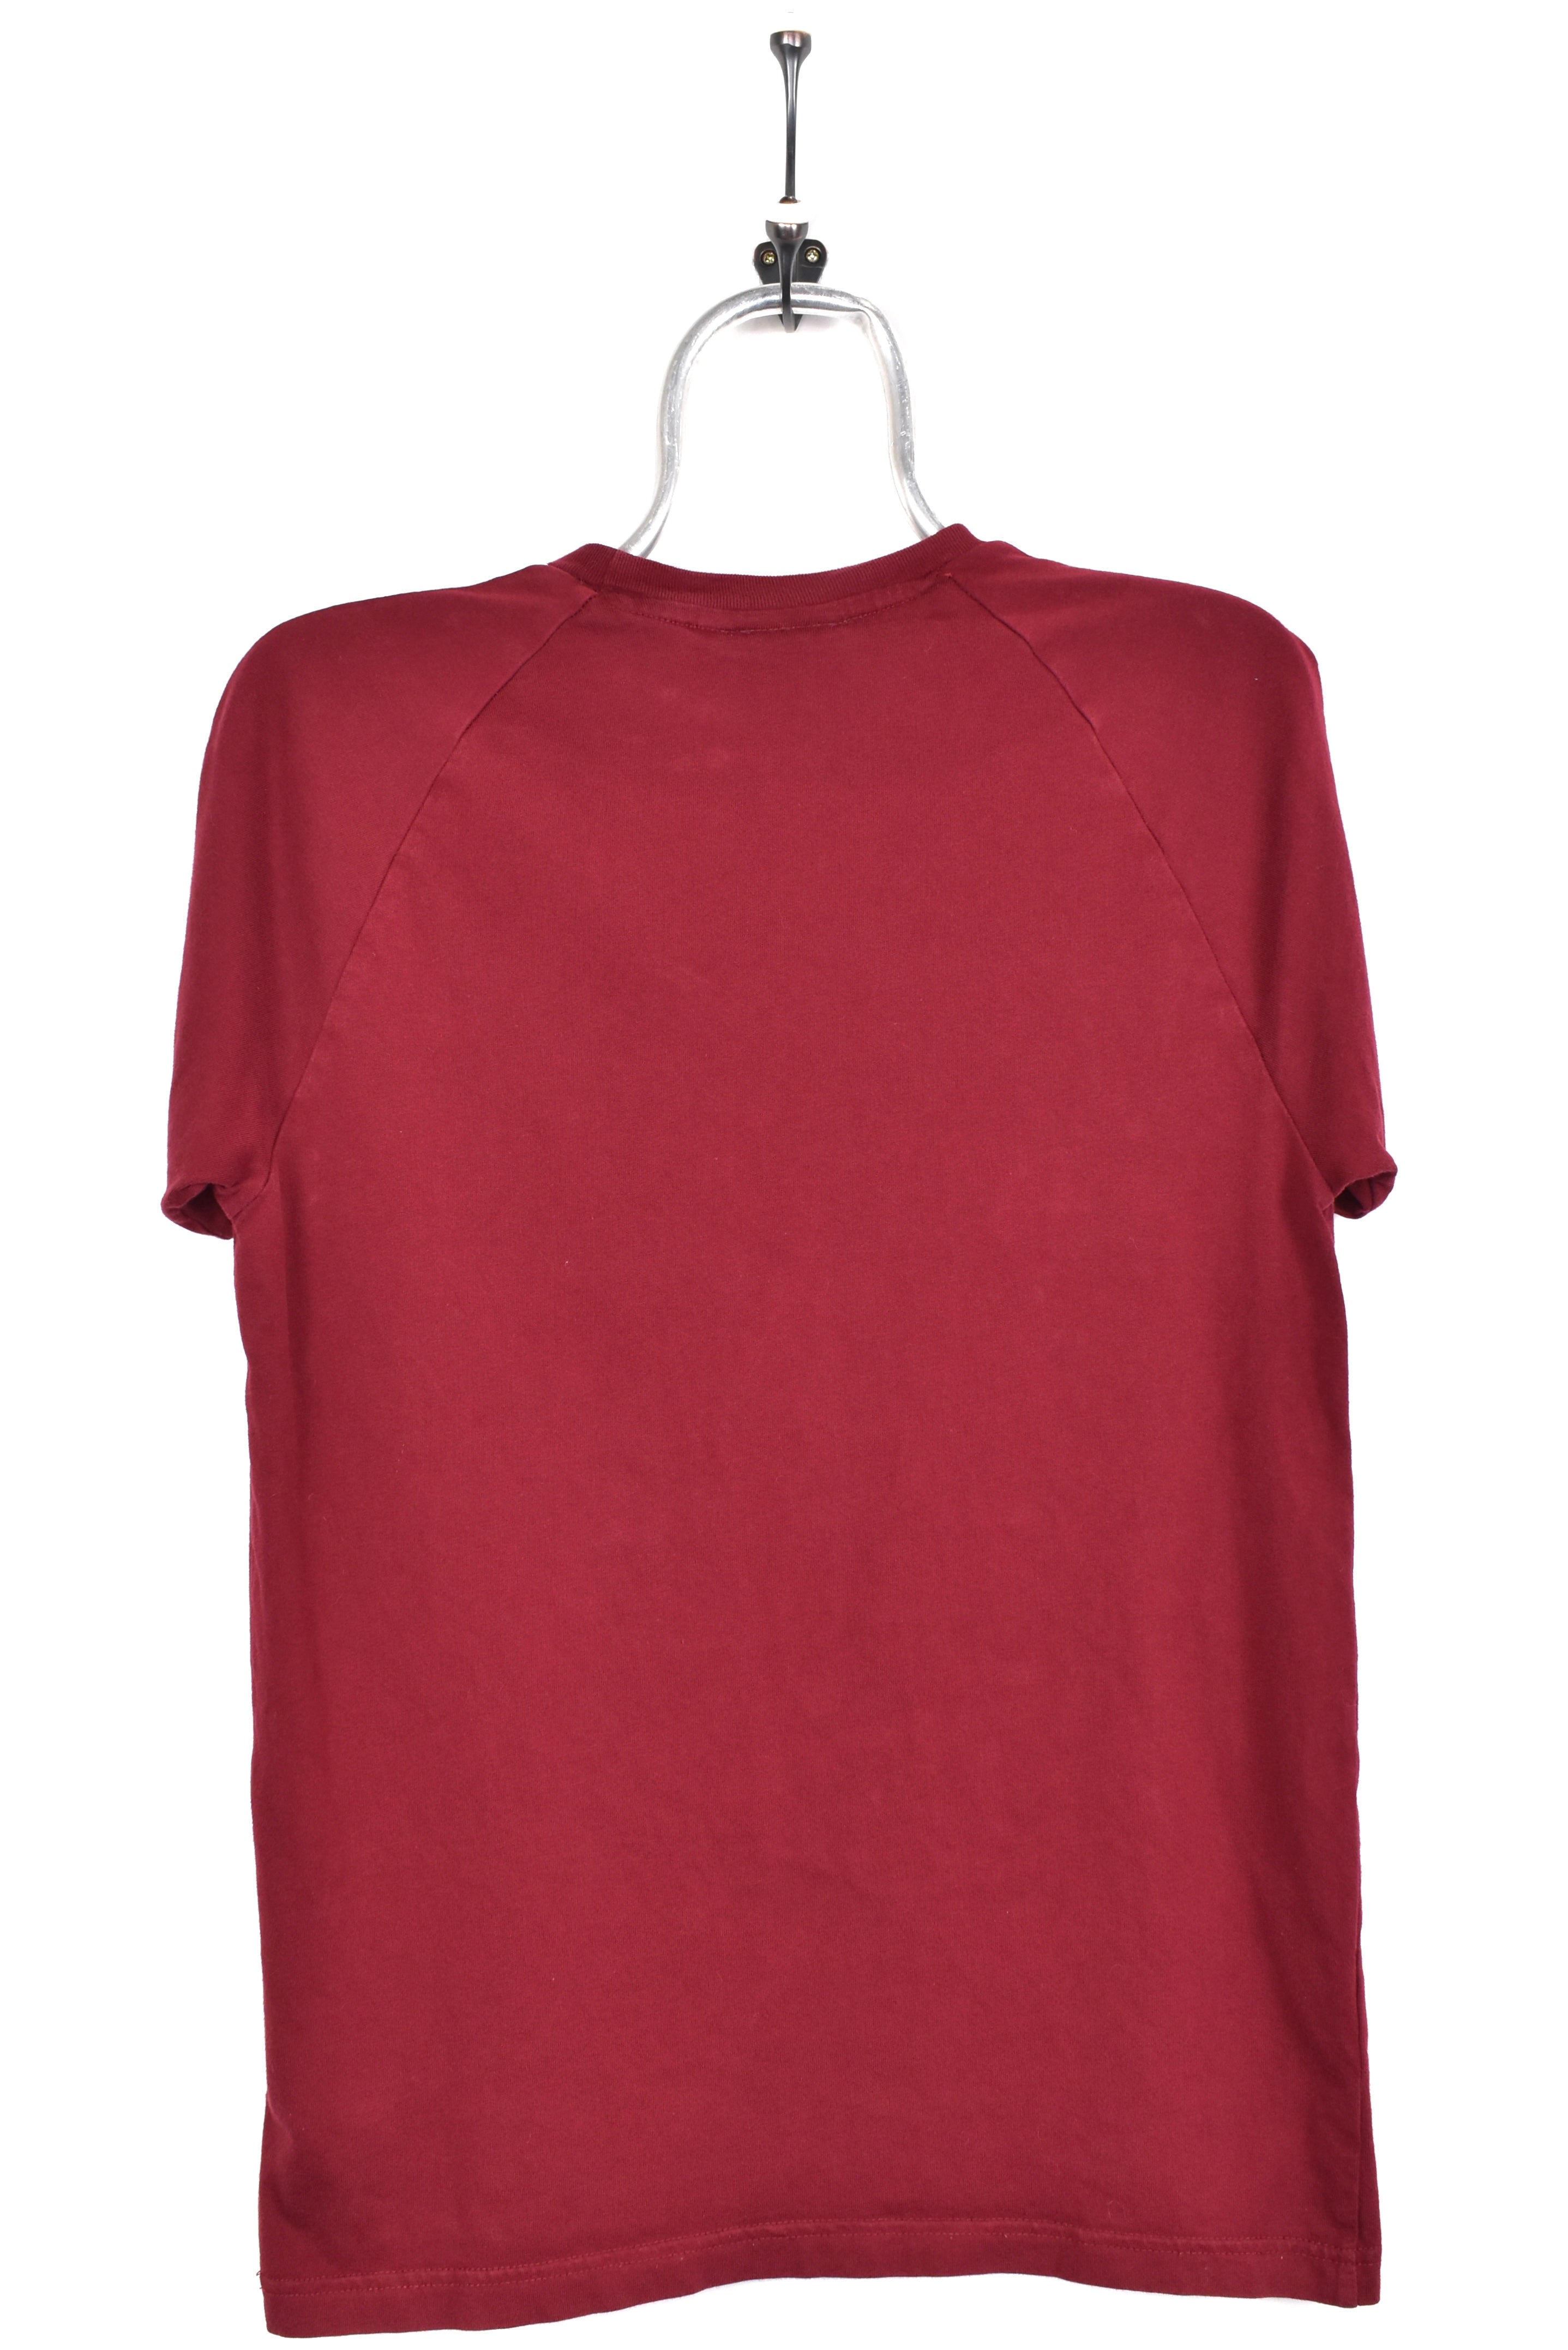 Vintage Adidas shirt, burgundy embroidered tee - AU S ADIDAS